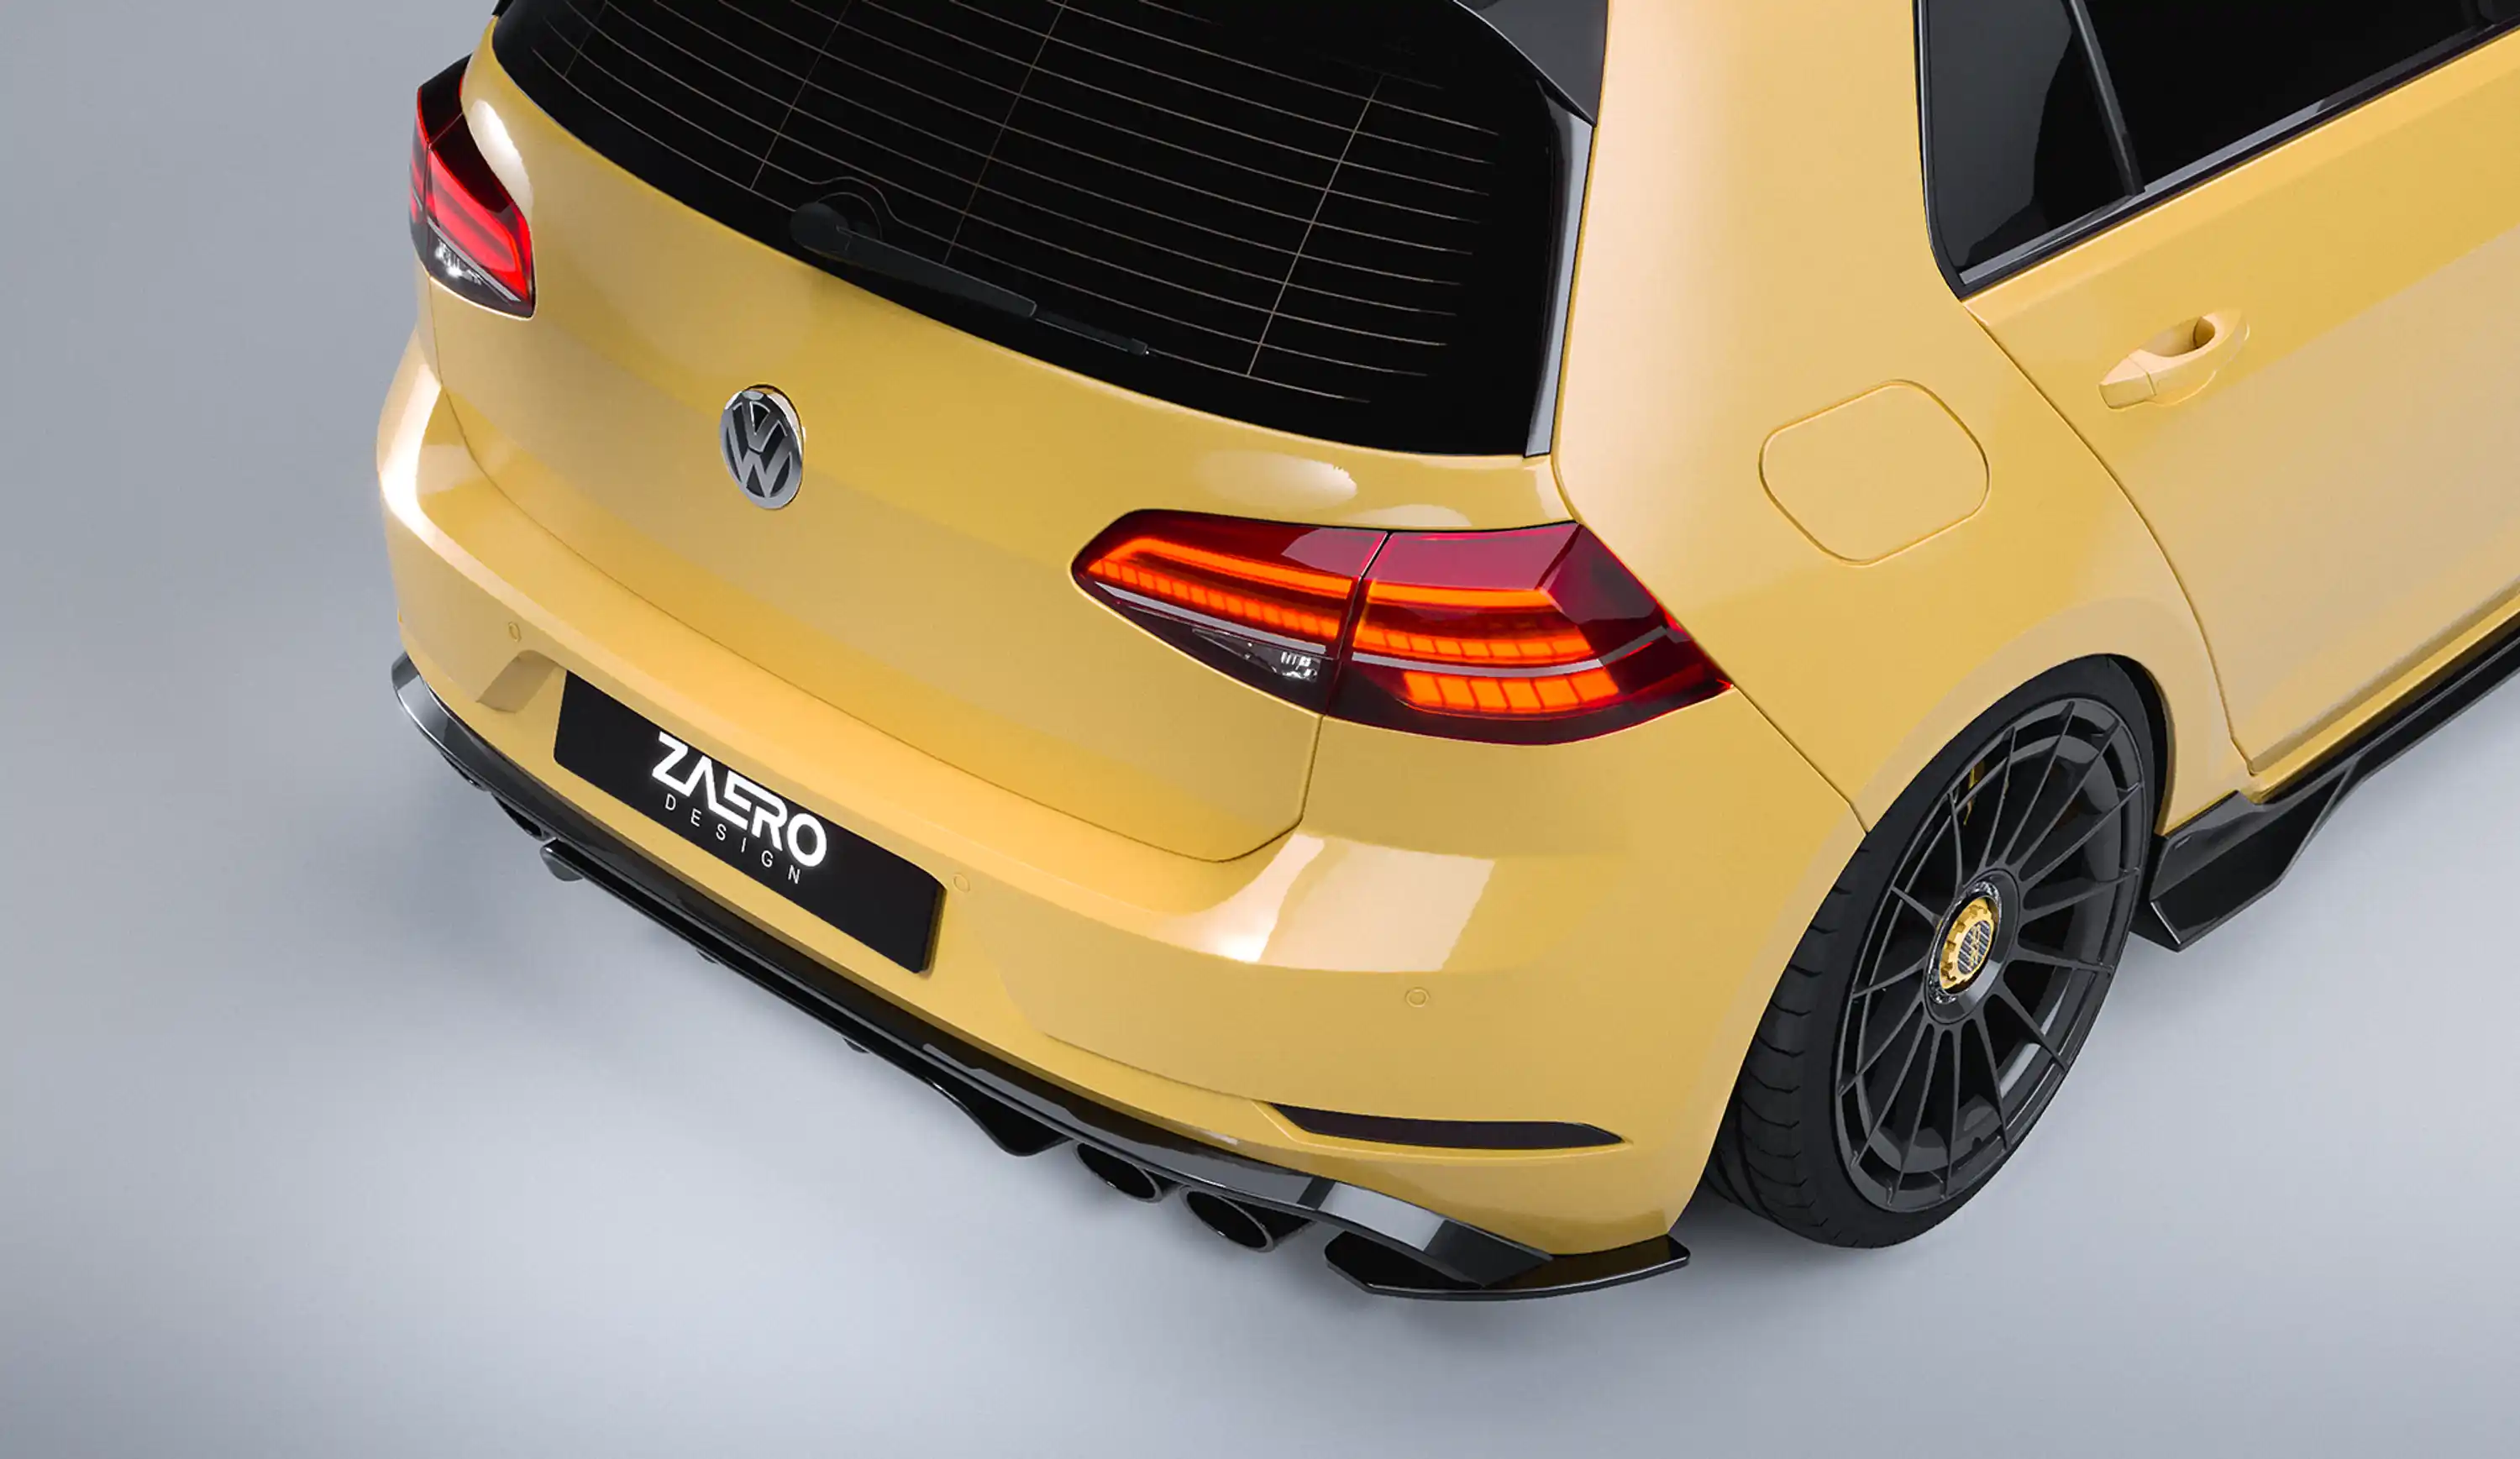 ZAERO DESIGN Diffusor für VW Golf 7.5 R (2017 – 2019)